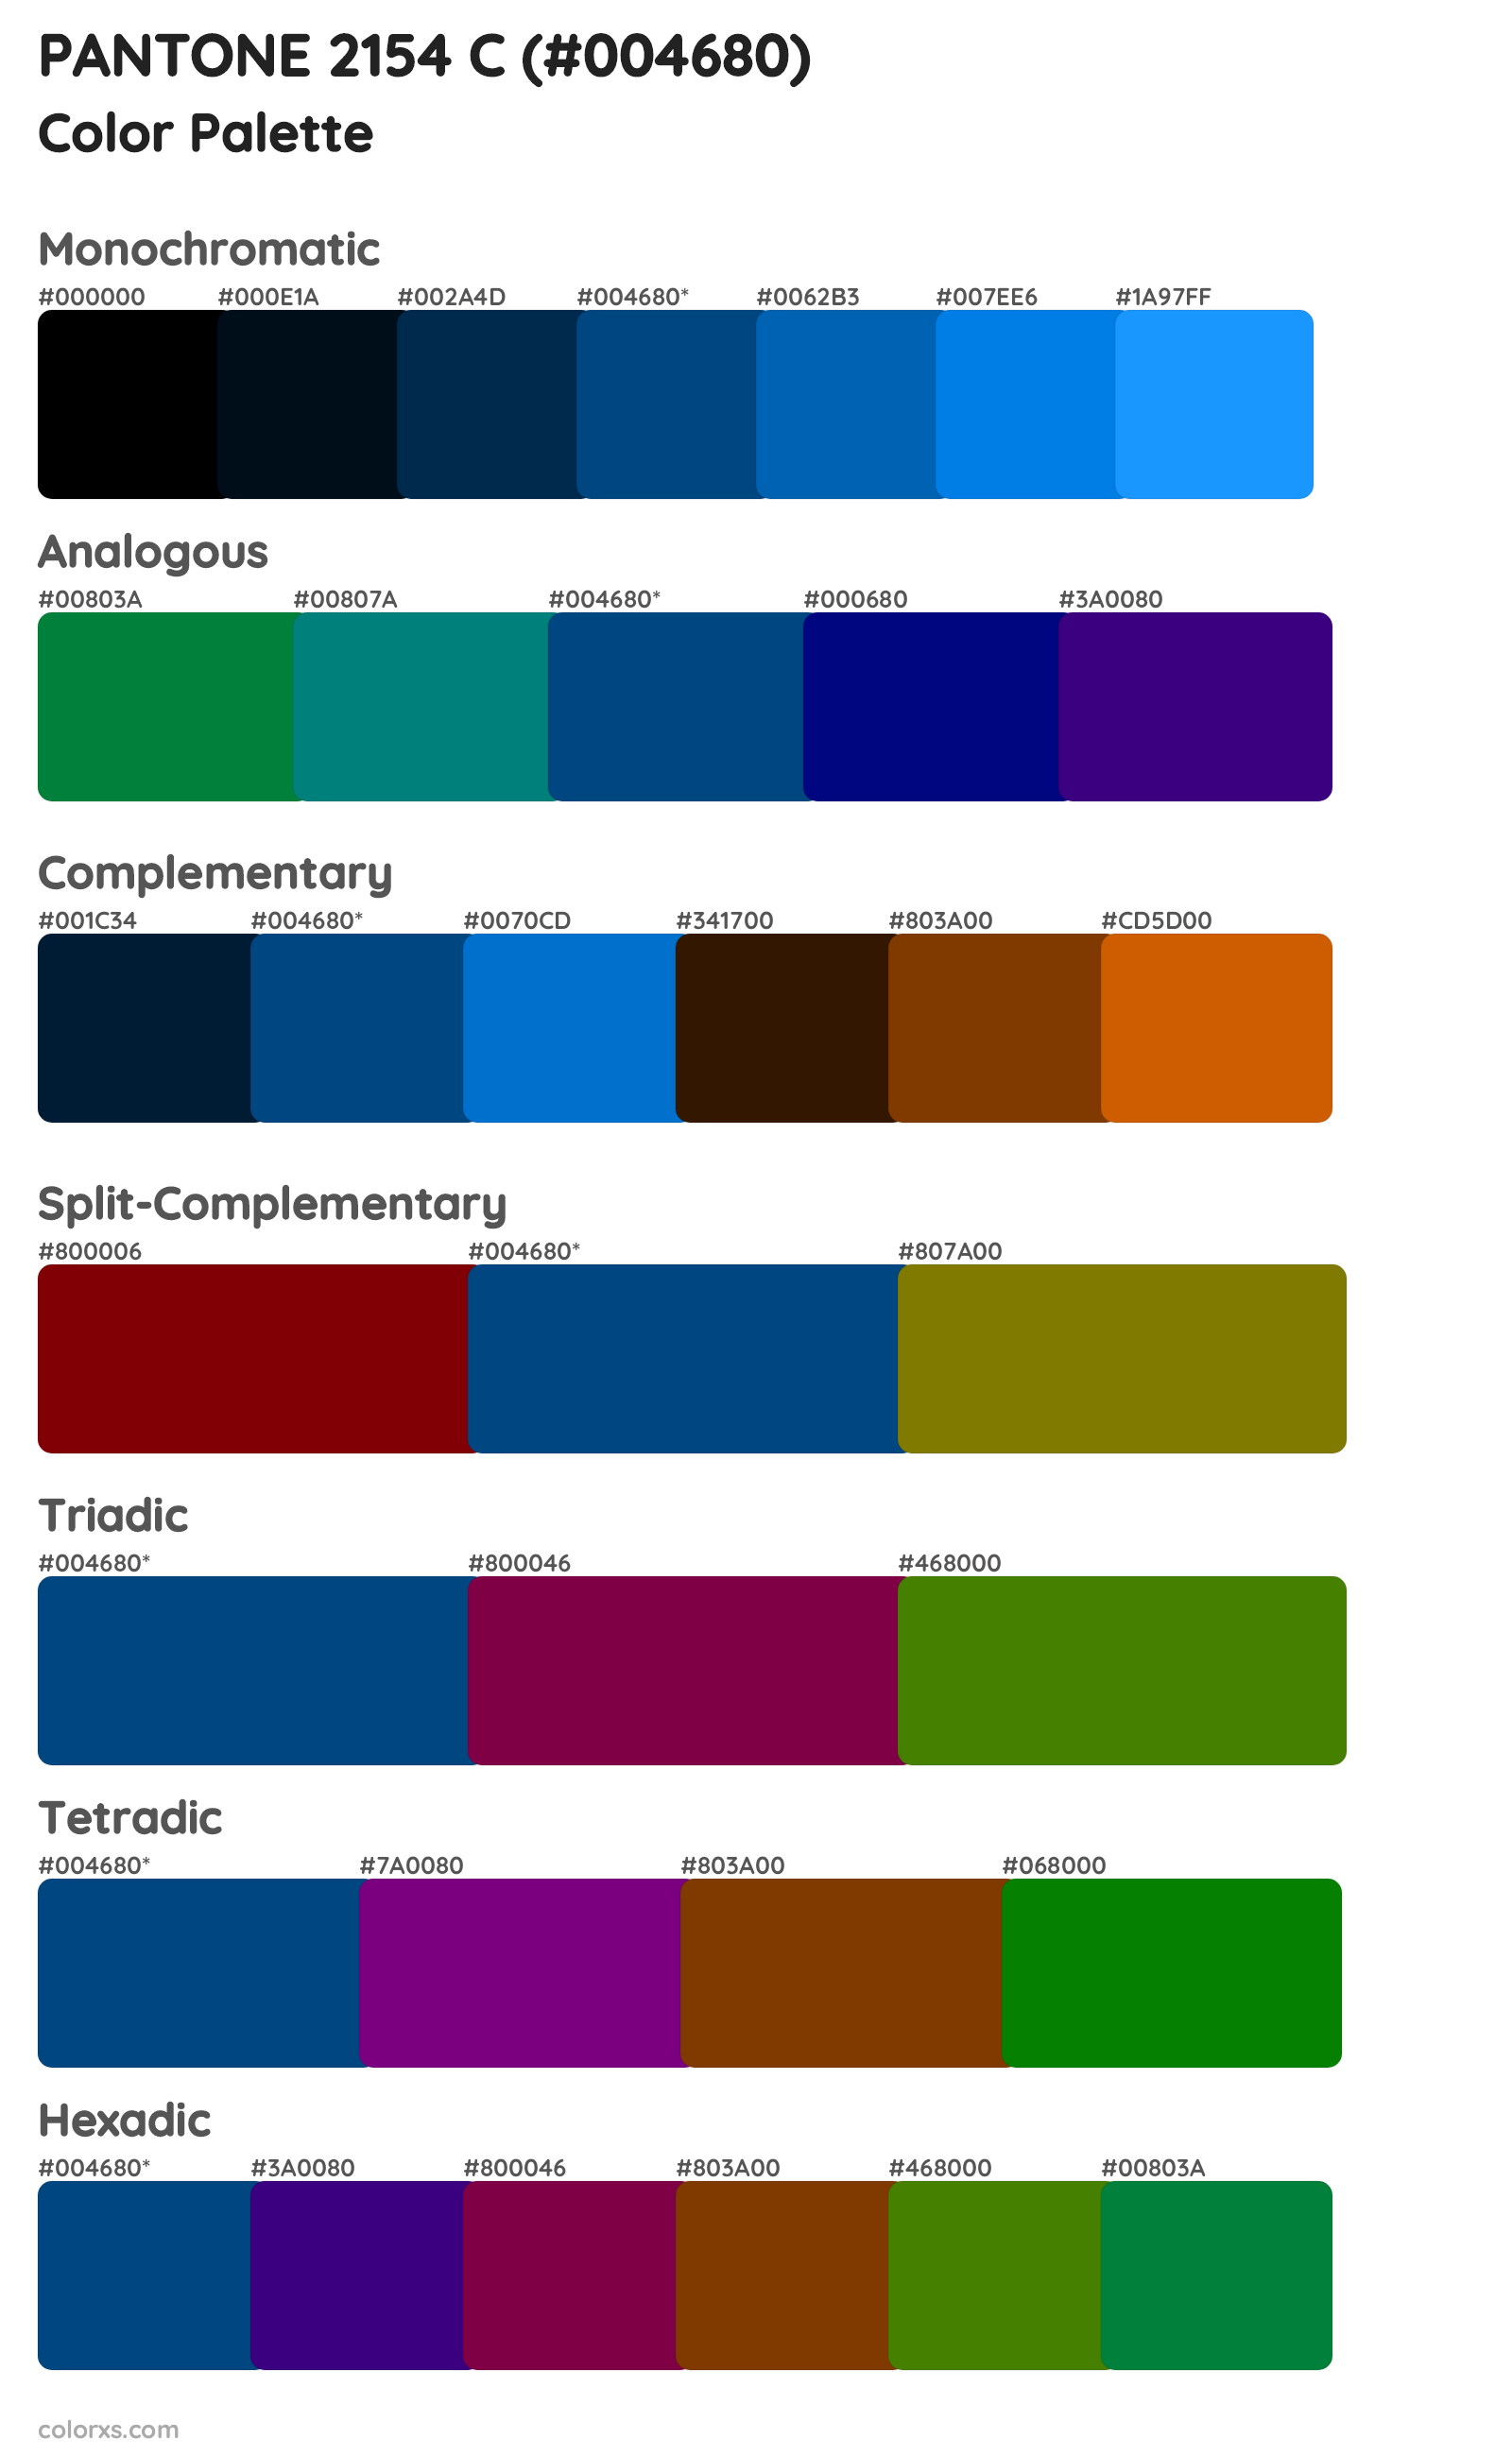 PANTONE 2154 C Color Scheme Palettes